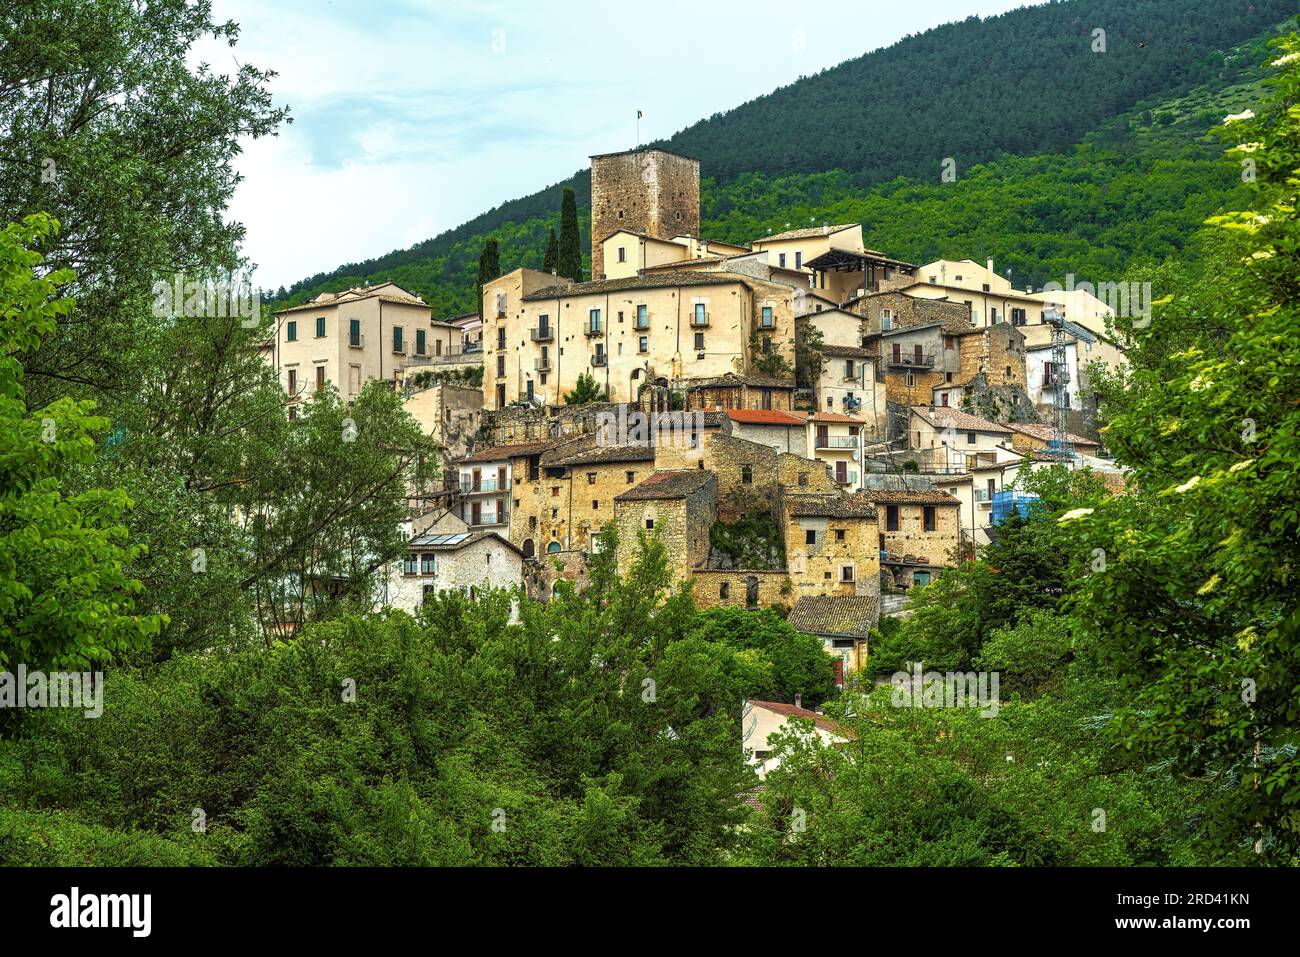 Le petit village de Castel di Ieri placé parmi les montagnes du Parc naturel régional de Sirente Velino dans la vallée de Subequana Banque D'Images